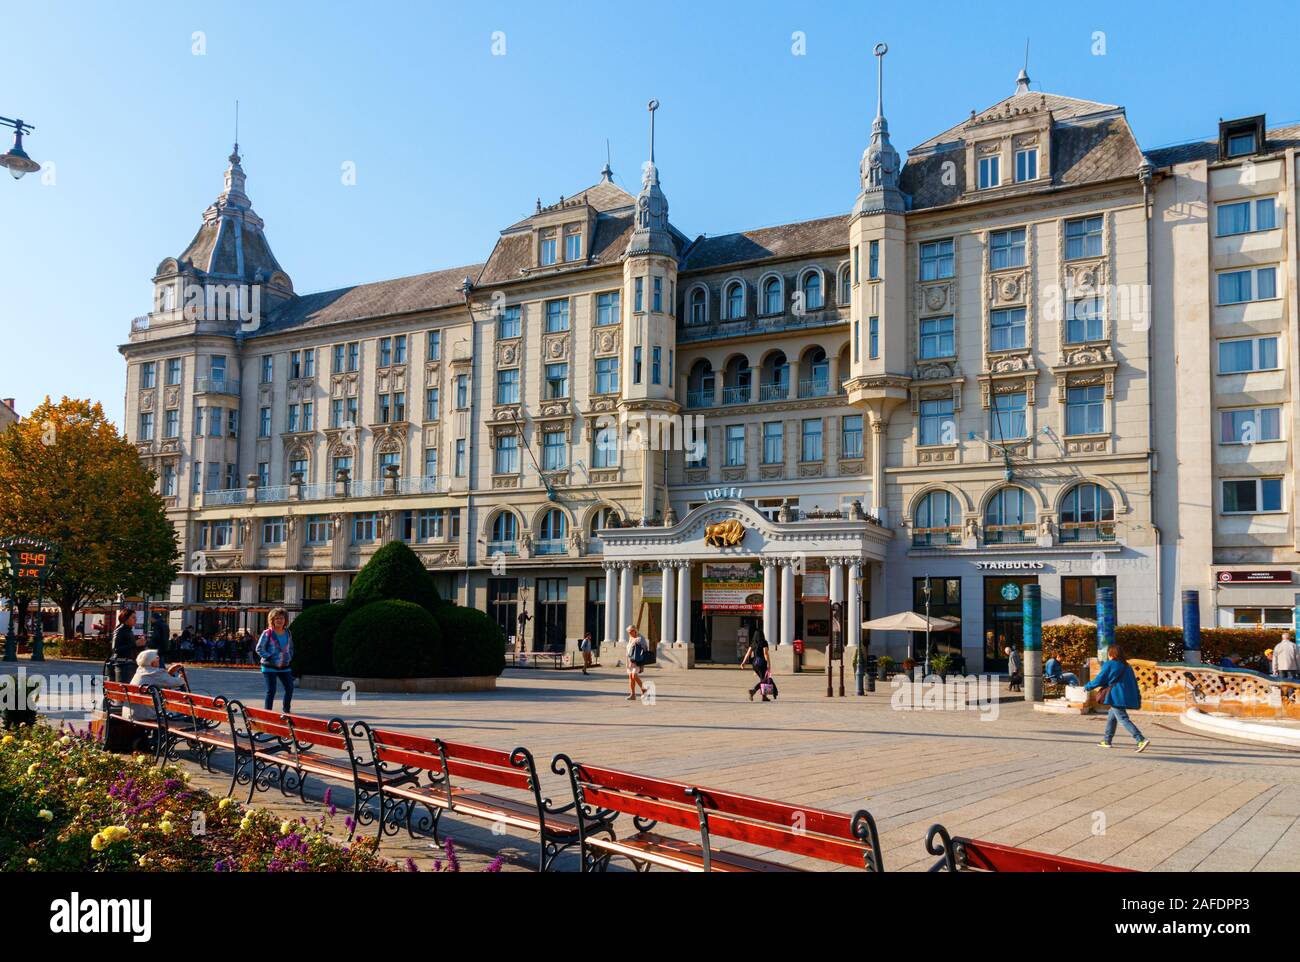 Kossuth Square avec la façade néoclassique de l'Grand Hotel Aranybika sous un ciel bleu. Debrecen, Hongrie. Banque D'Images